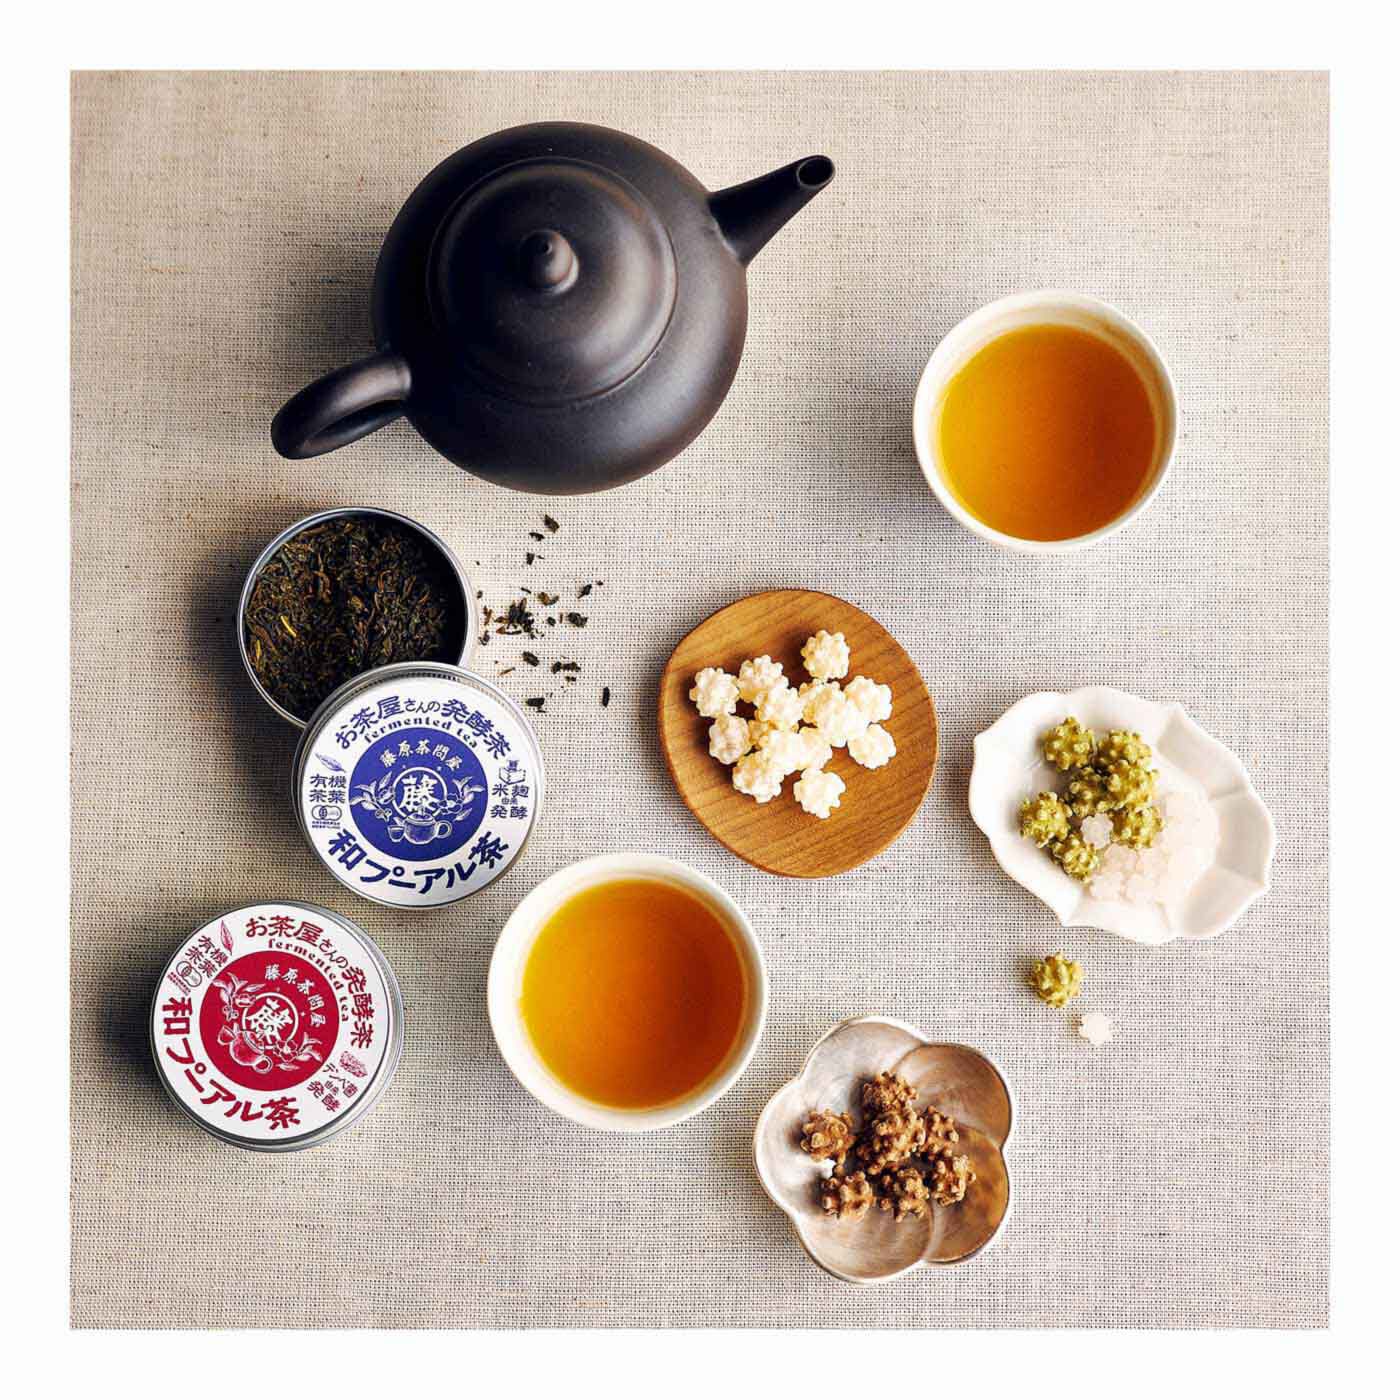 純農|純農 からだにしみ渡るおいしさ 島根の茶師が5種の由来で醸した 有機 和プーアル茶の会（5回予約）|ギフトにもピッタリなちいさなかわいい缶入り♪